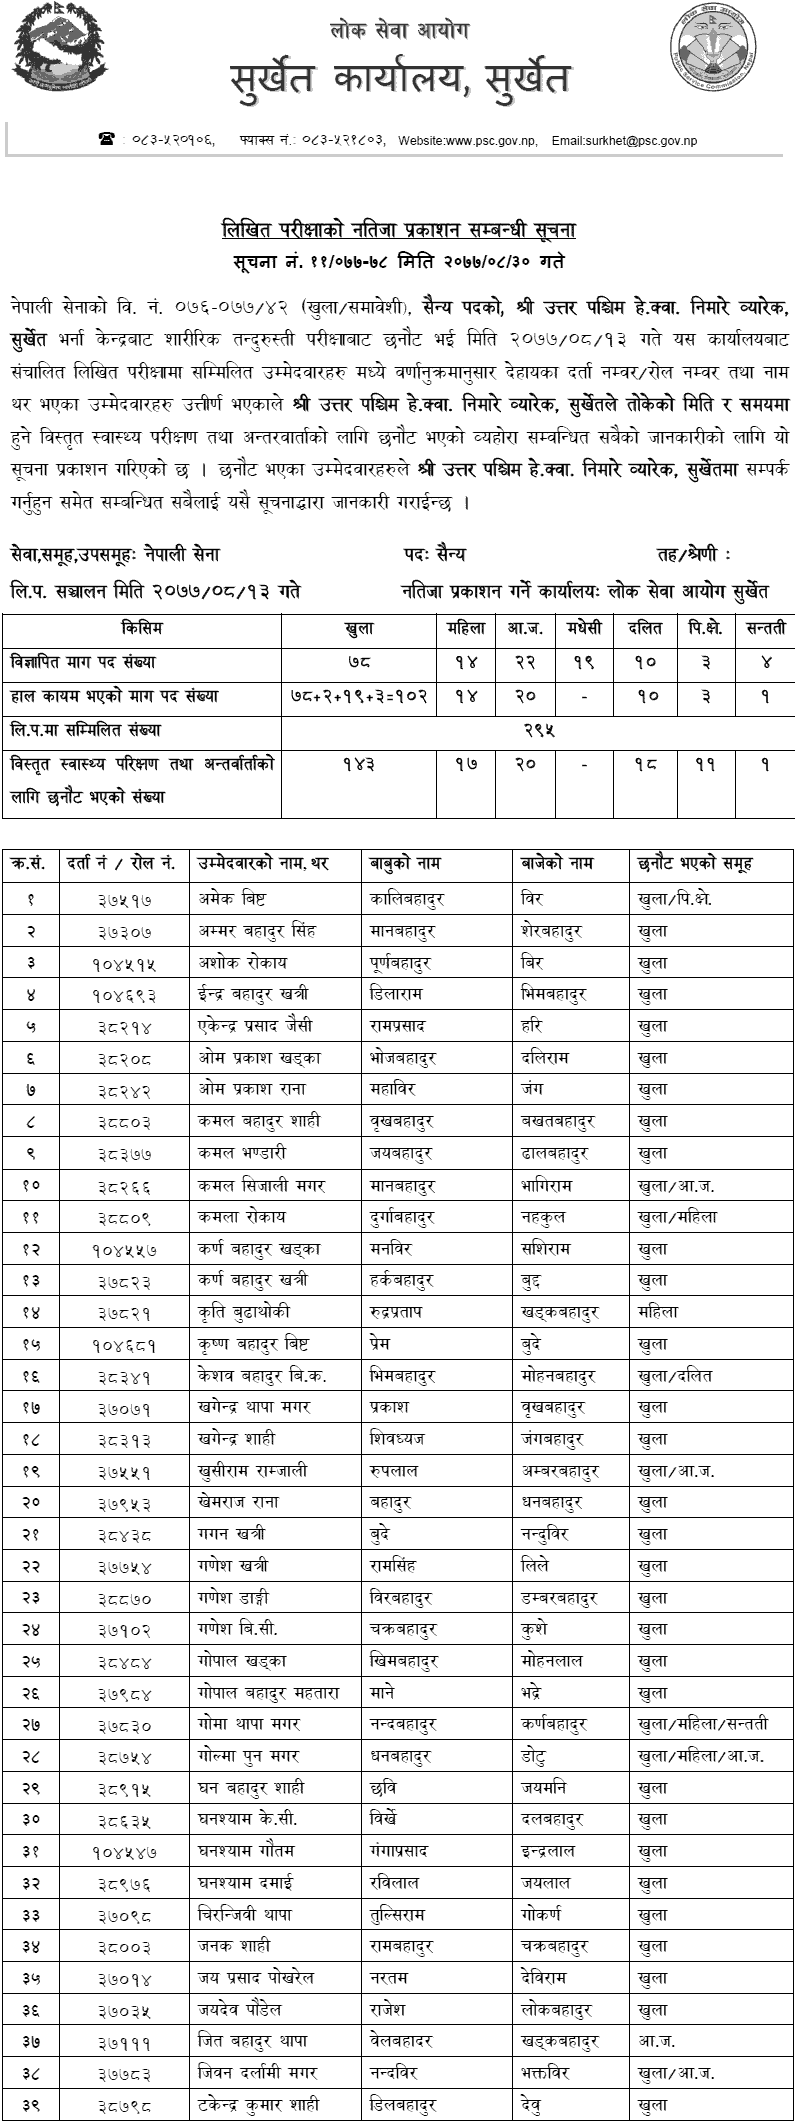 Nepal Army Surkhet Military (Sainya) Post Written Exam Result